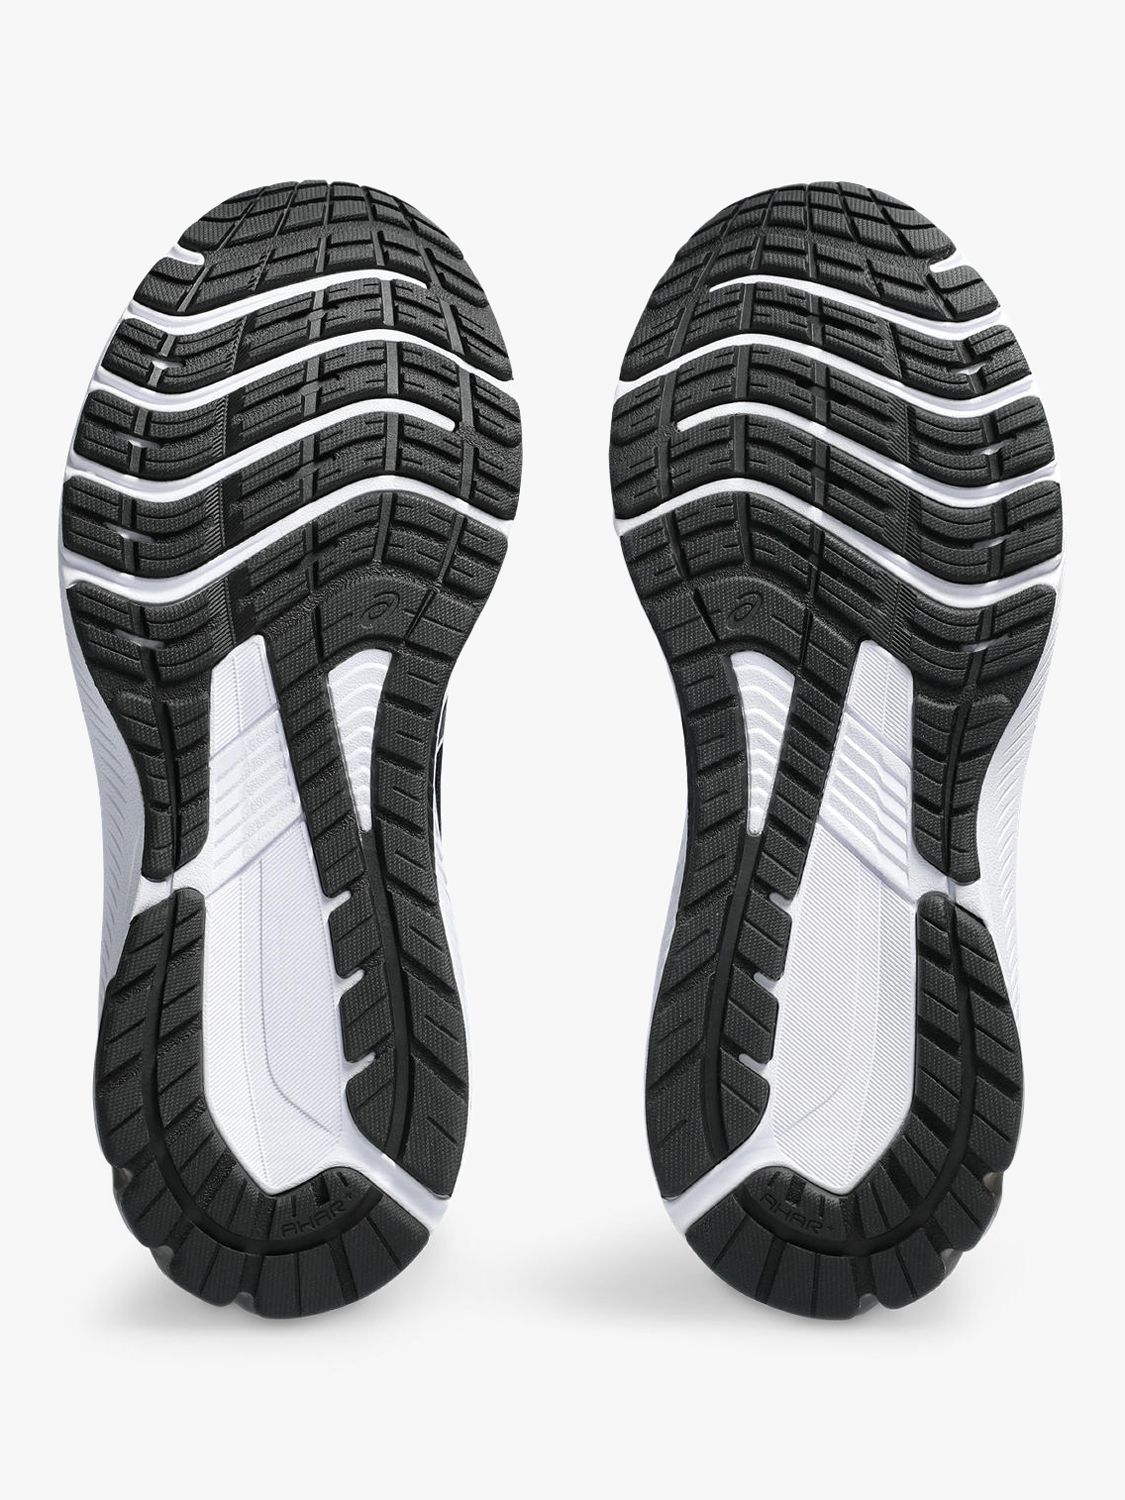 ASICS GT-1000 12 Women's Running Shoes, Black/White, 5.5